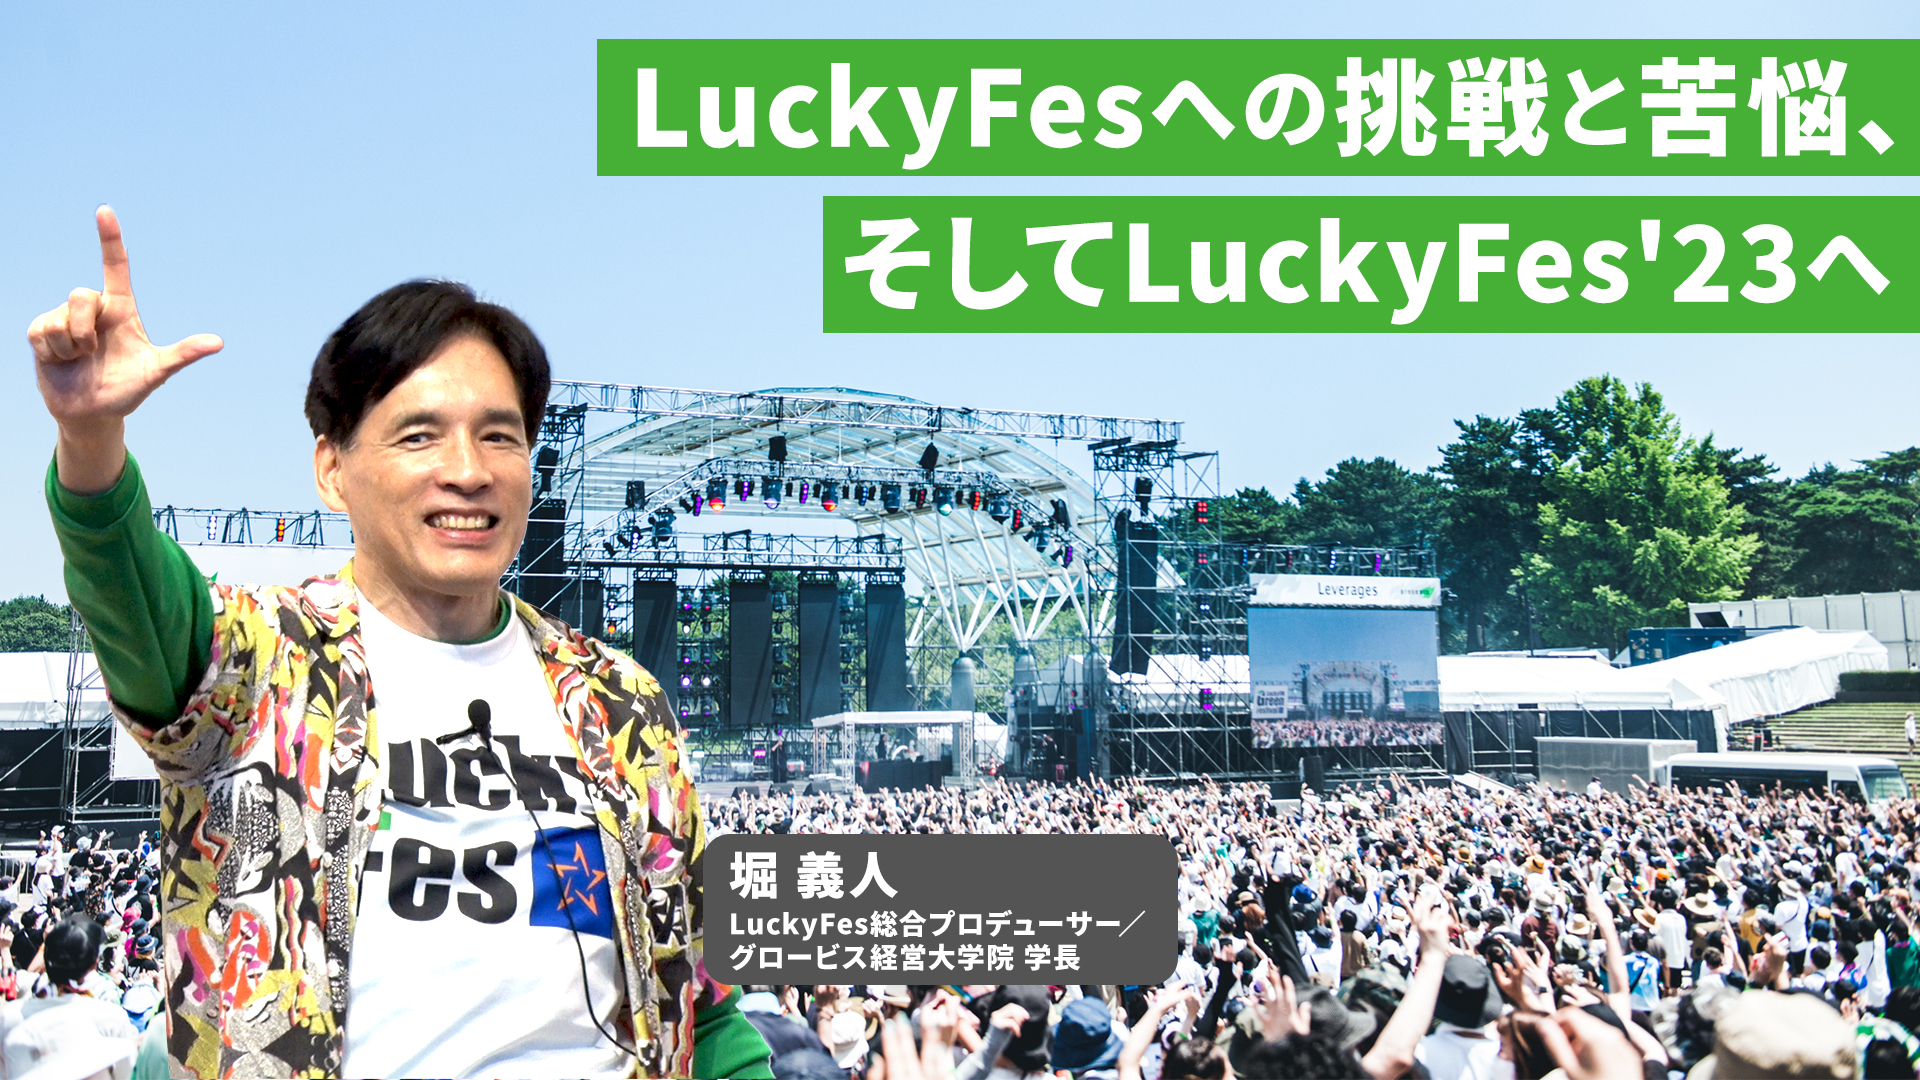 堀義人が語る「LuckyFesへの挑戦と苦悩、そしてLuckyFes’23へ」